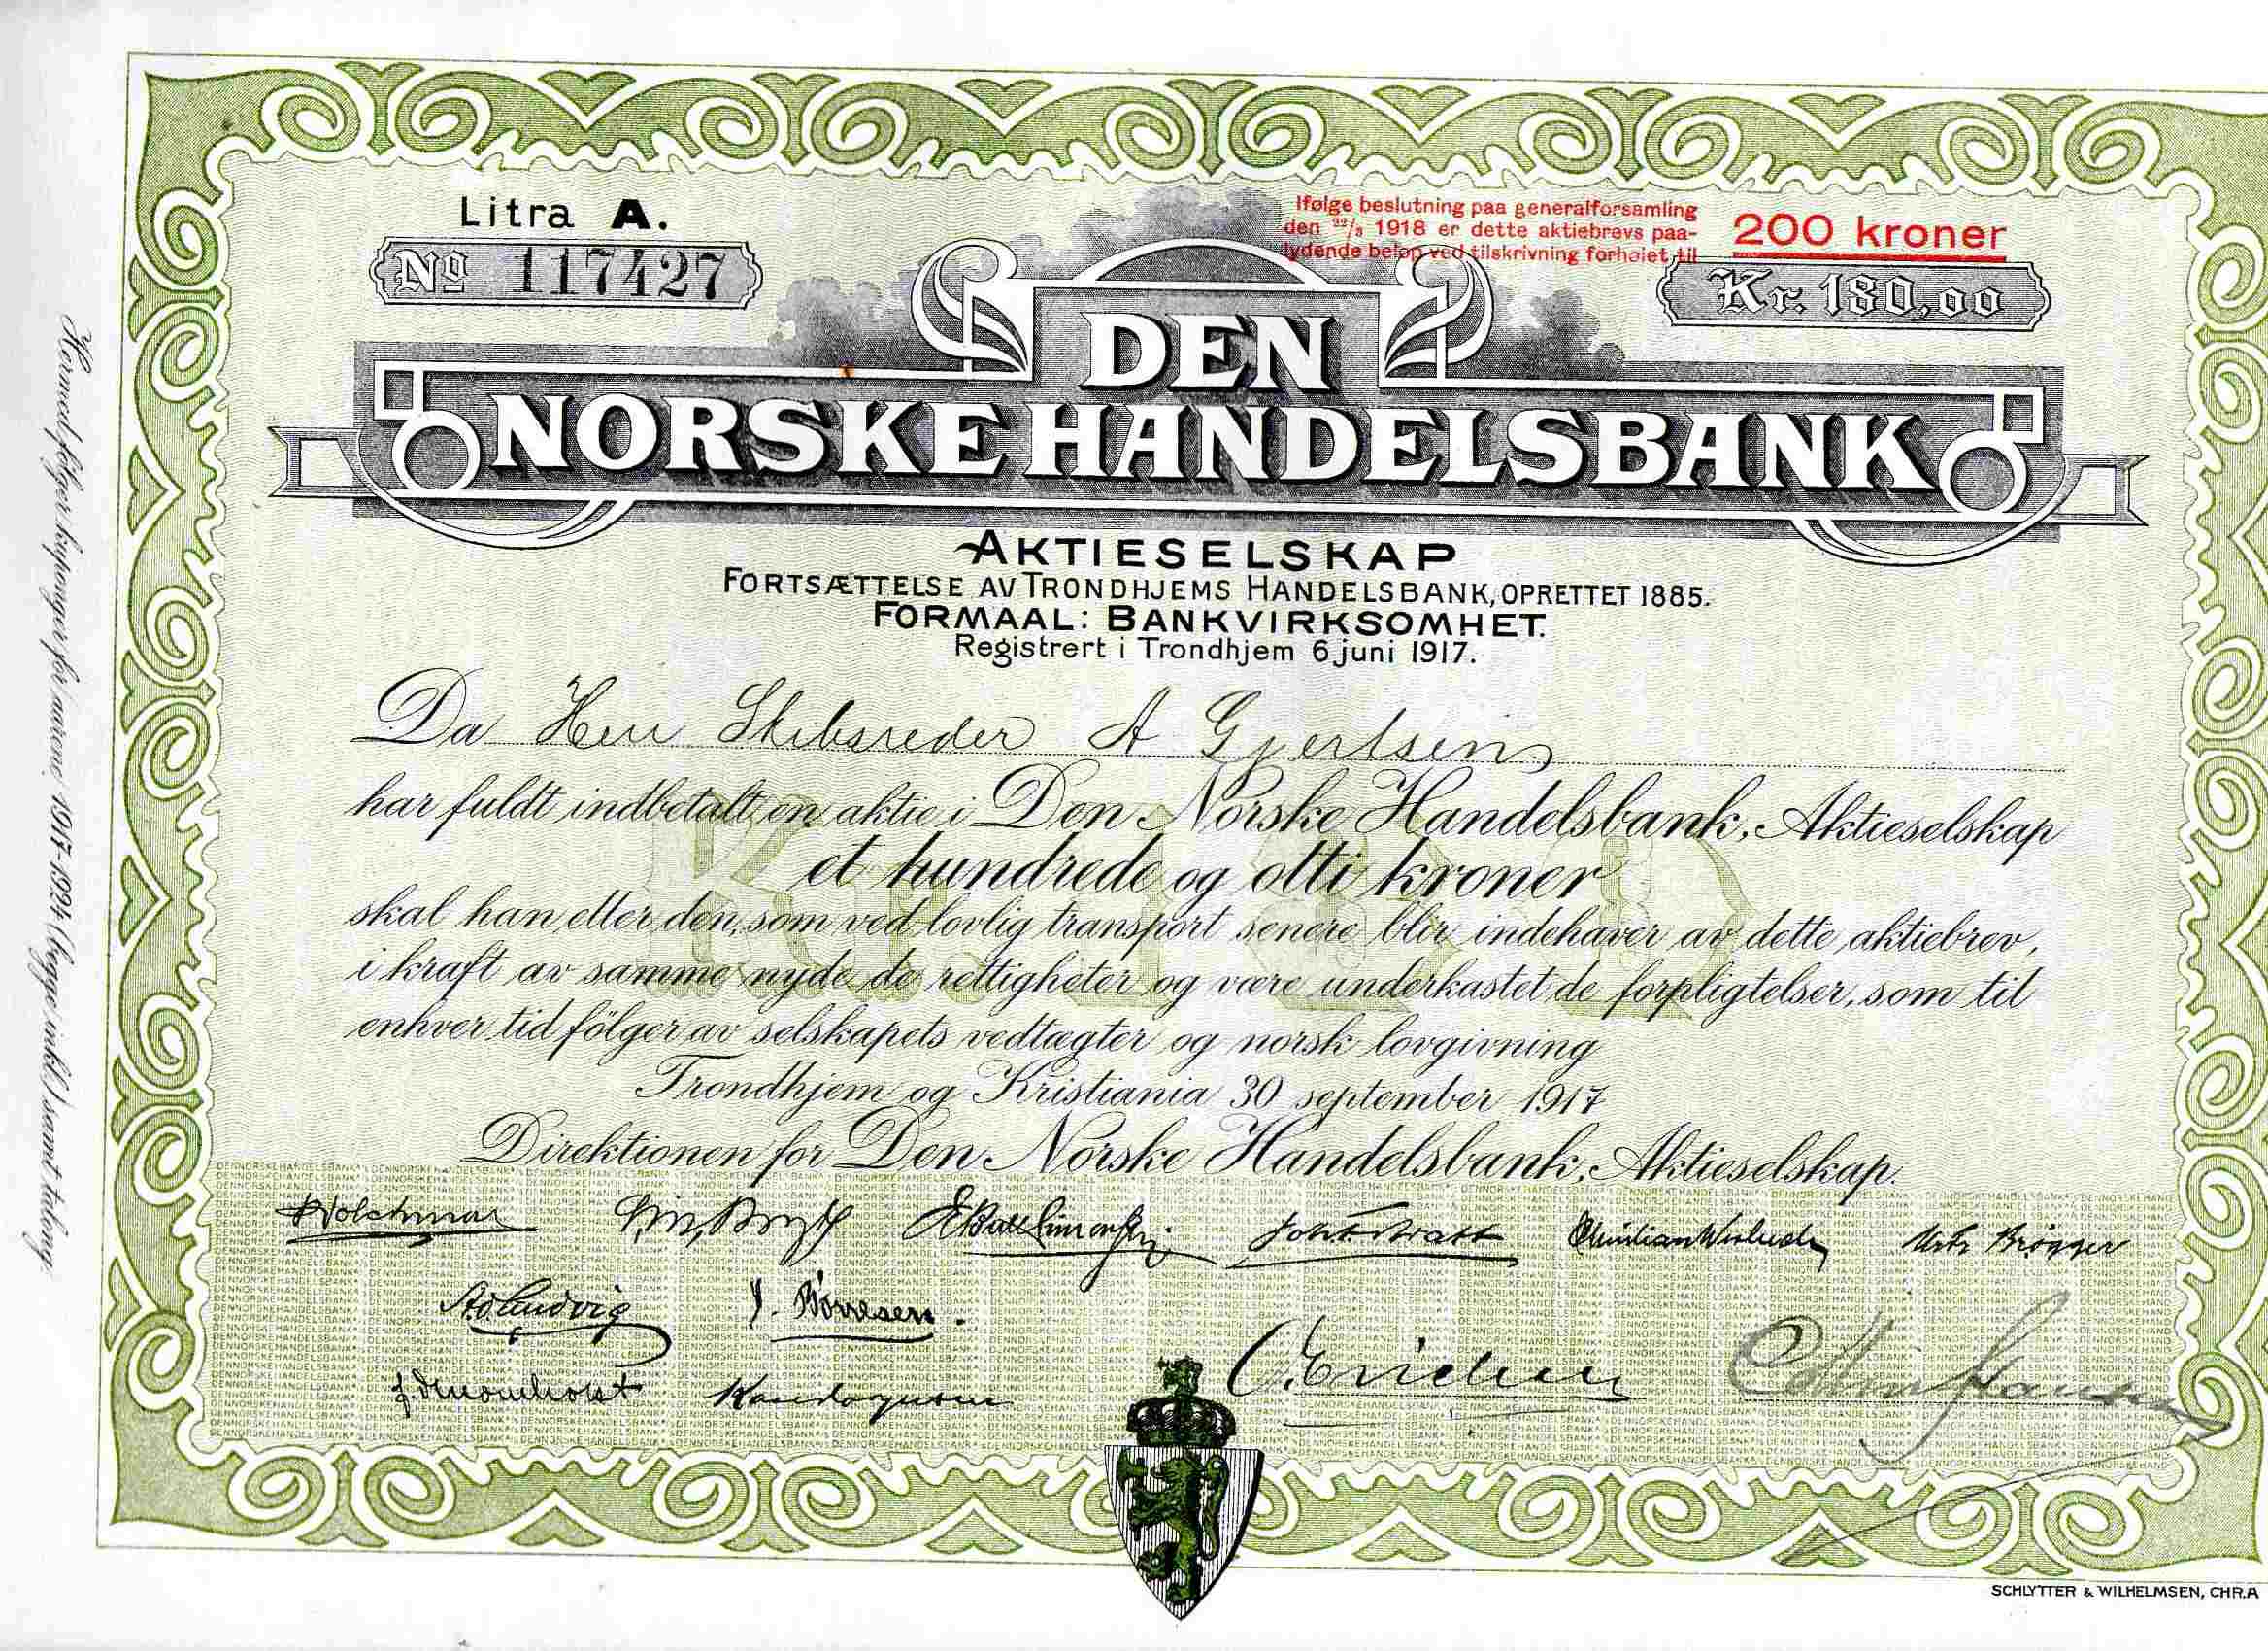 Den norske handelsbank kr 200/180 Litra A 117427 Trondhjem 1917